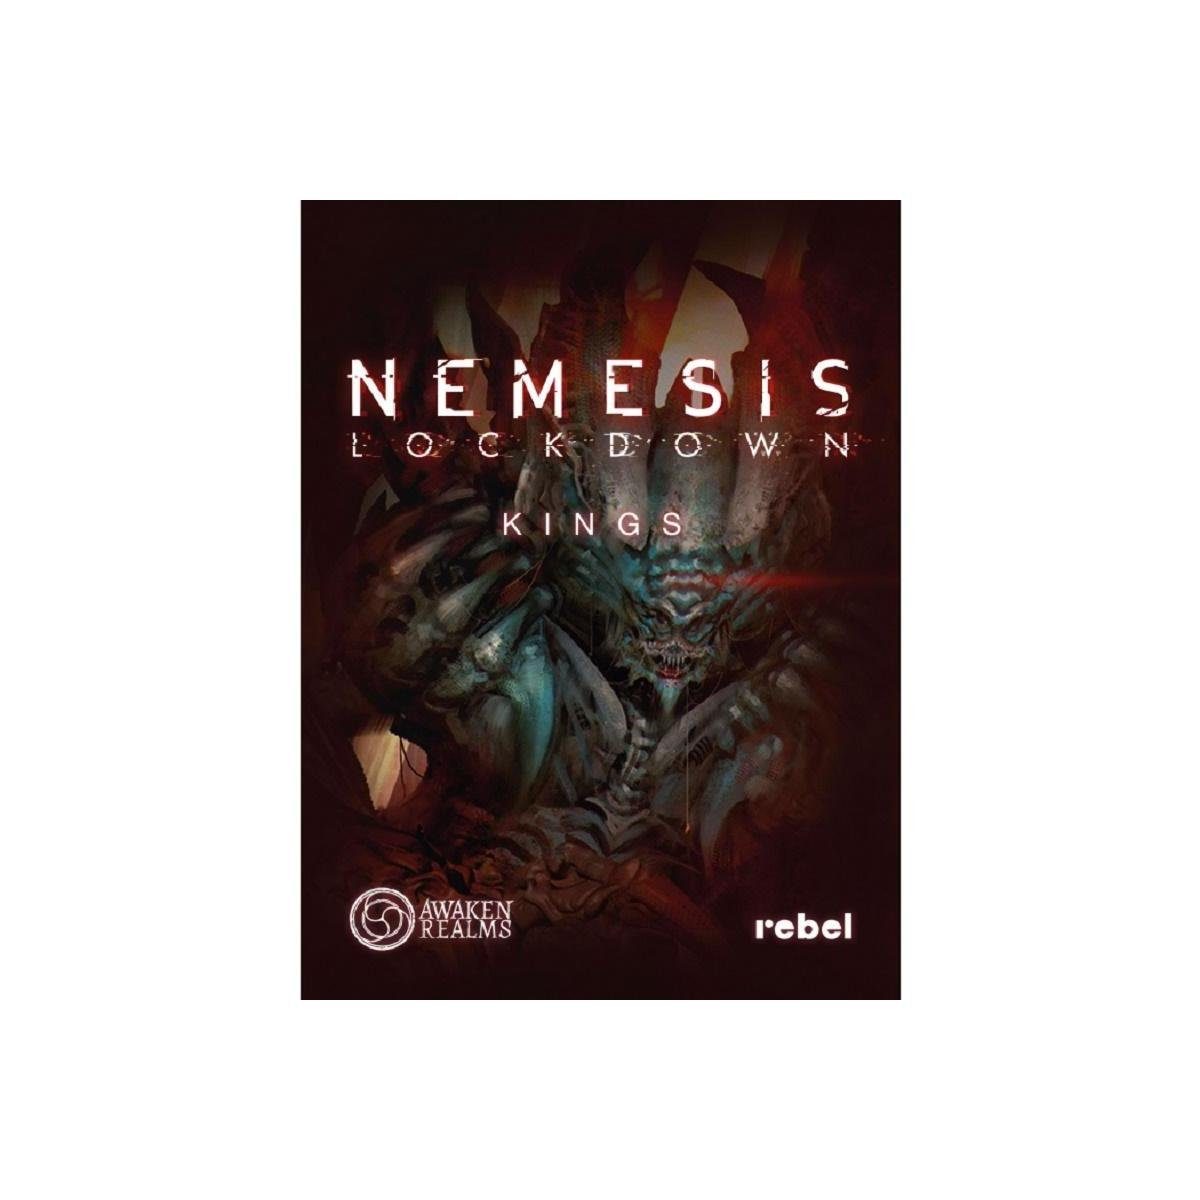 Pegasus Spiele Spiel, Familienspiel AWRD0017 - Nemesis: Lockdown - New  Kings, Brettspiel,...